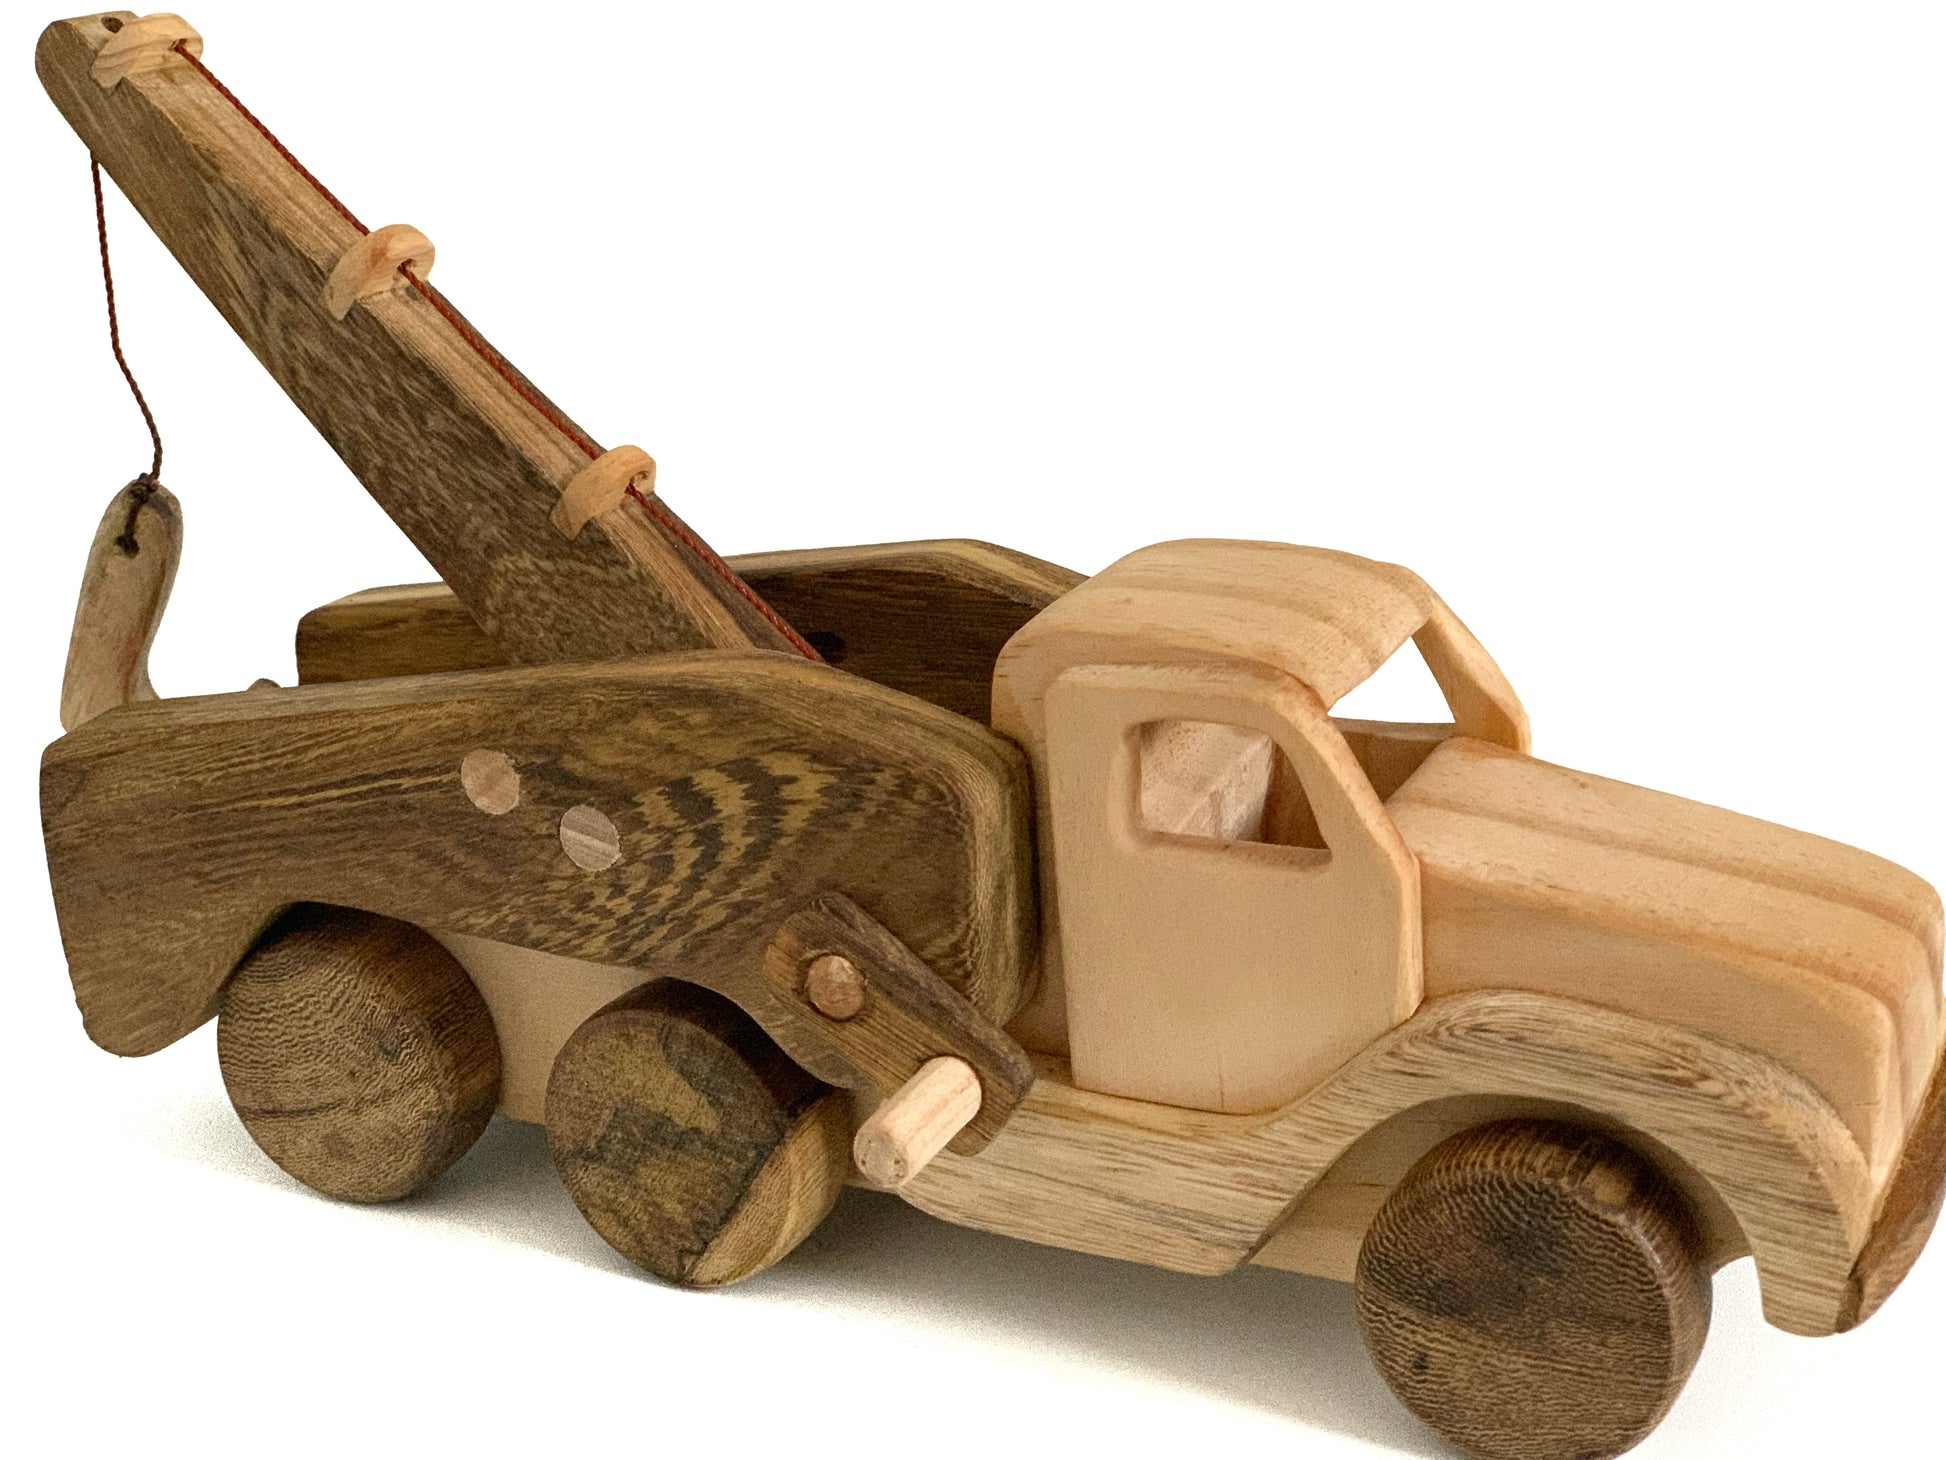 Crane Truck - My first wooden toy